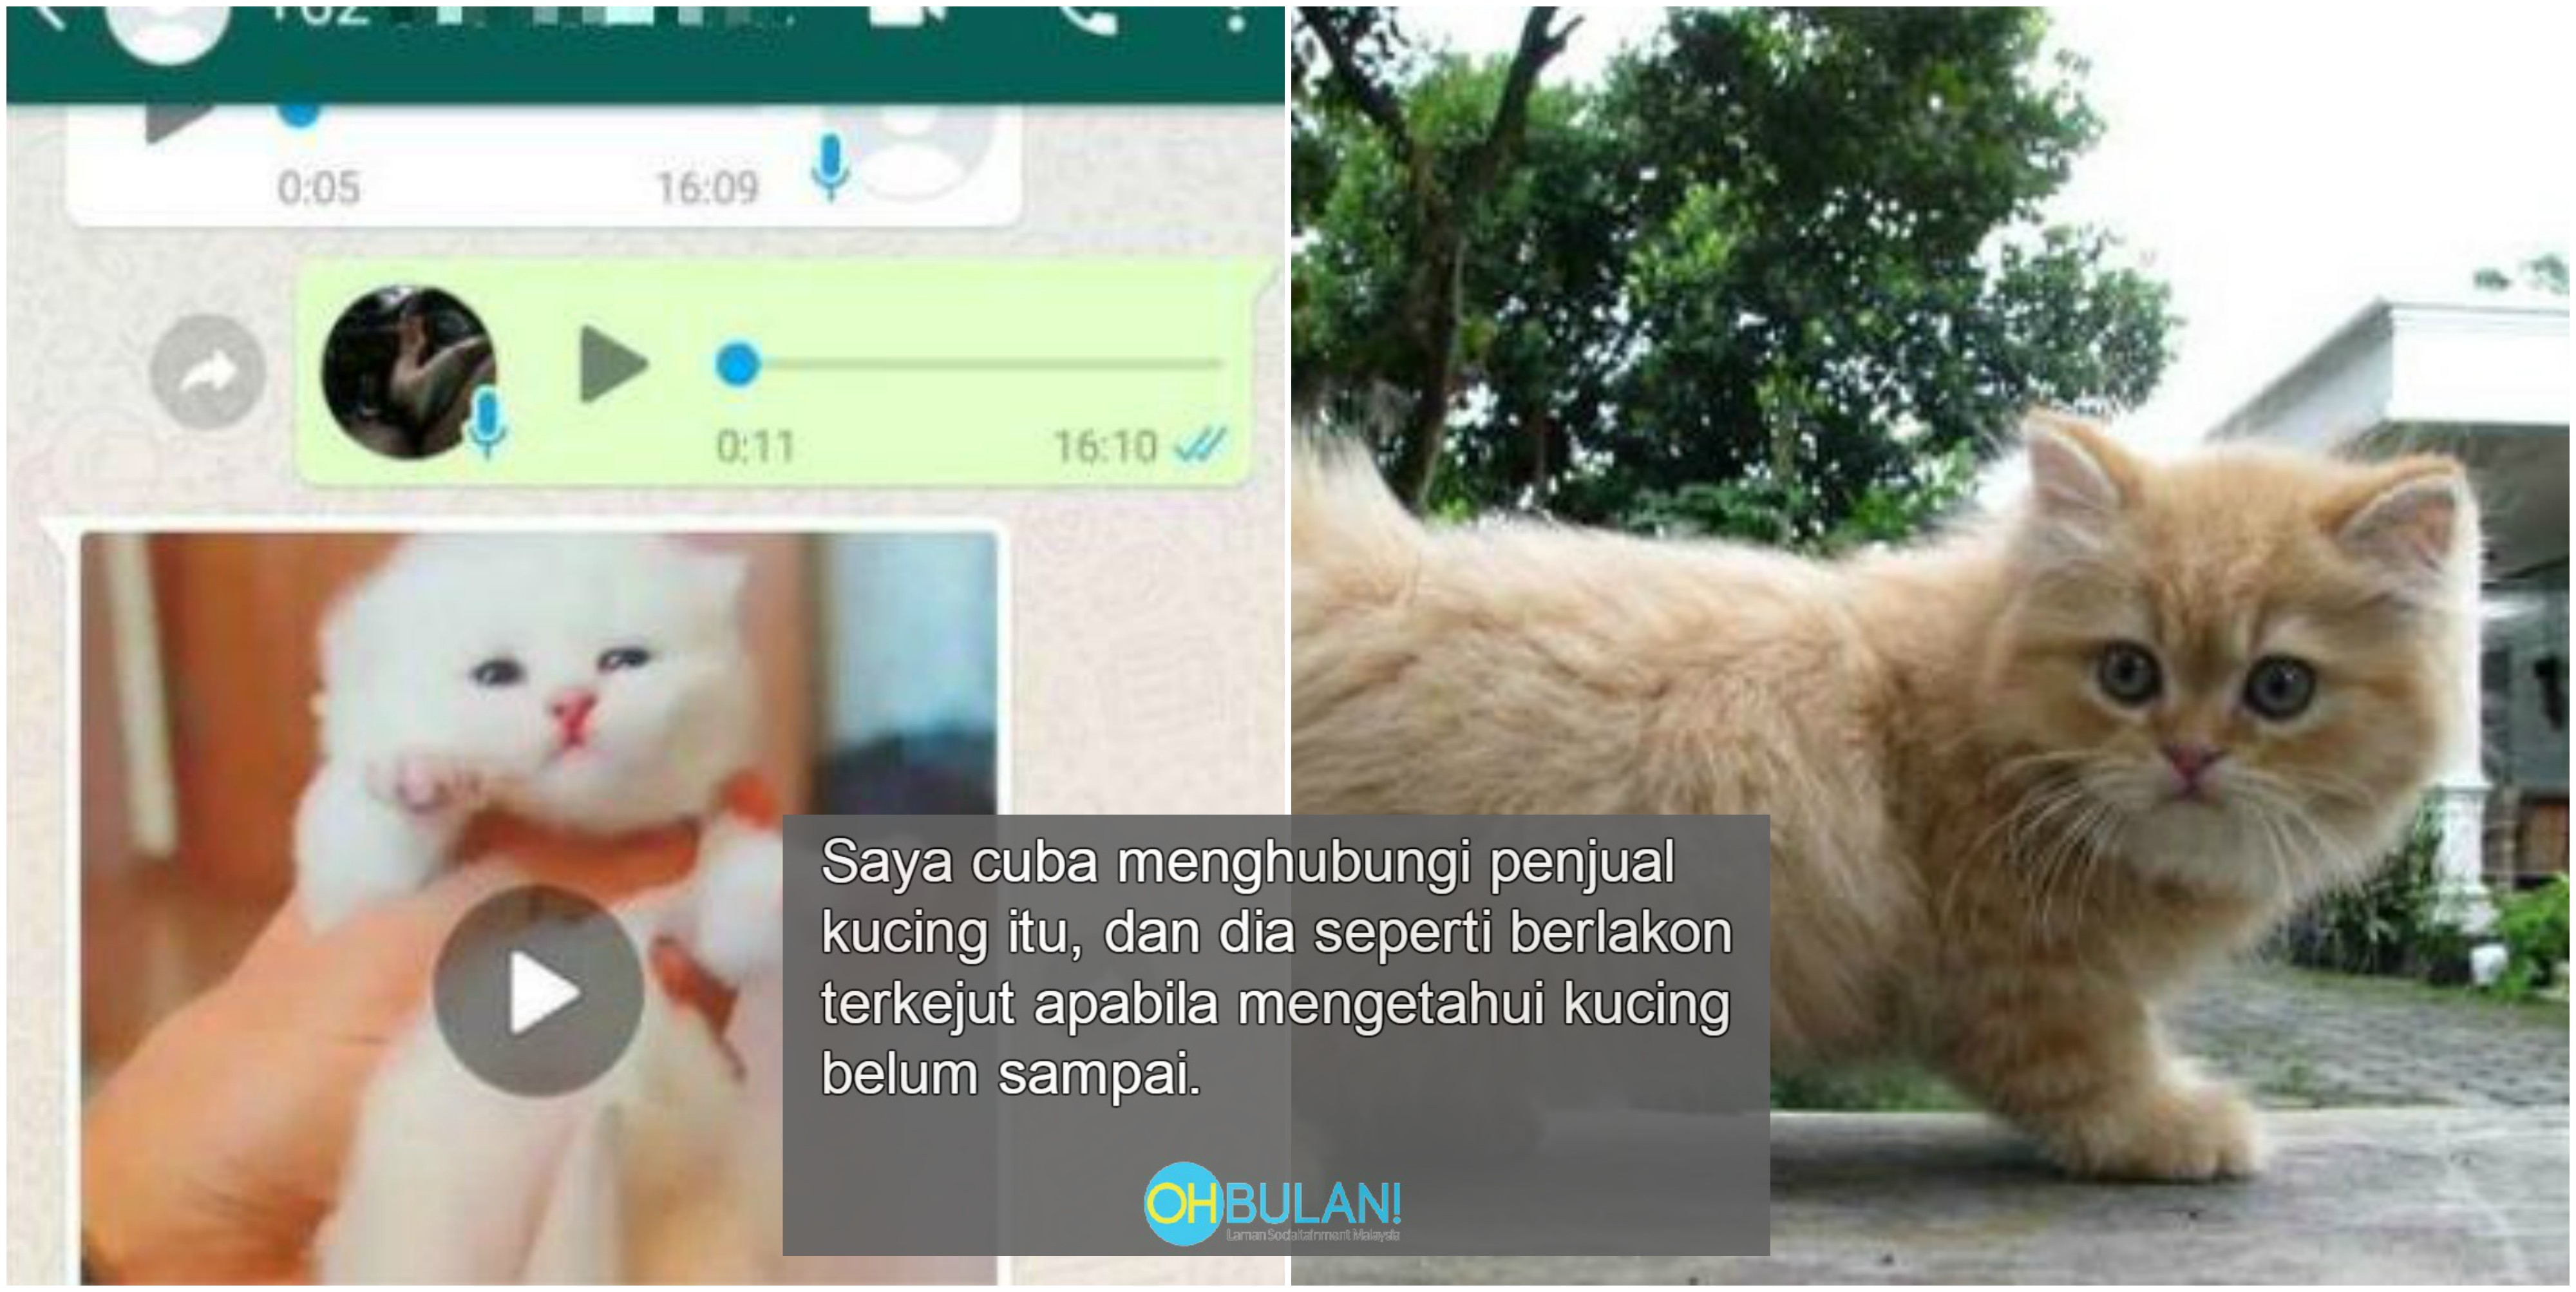 Kucing Tak Dapat, Duit Lesapu0027 u2013 Hajat Nak Bela Kucing Parsi RM200 